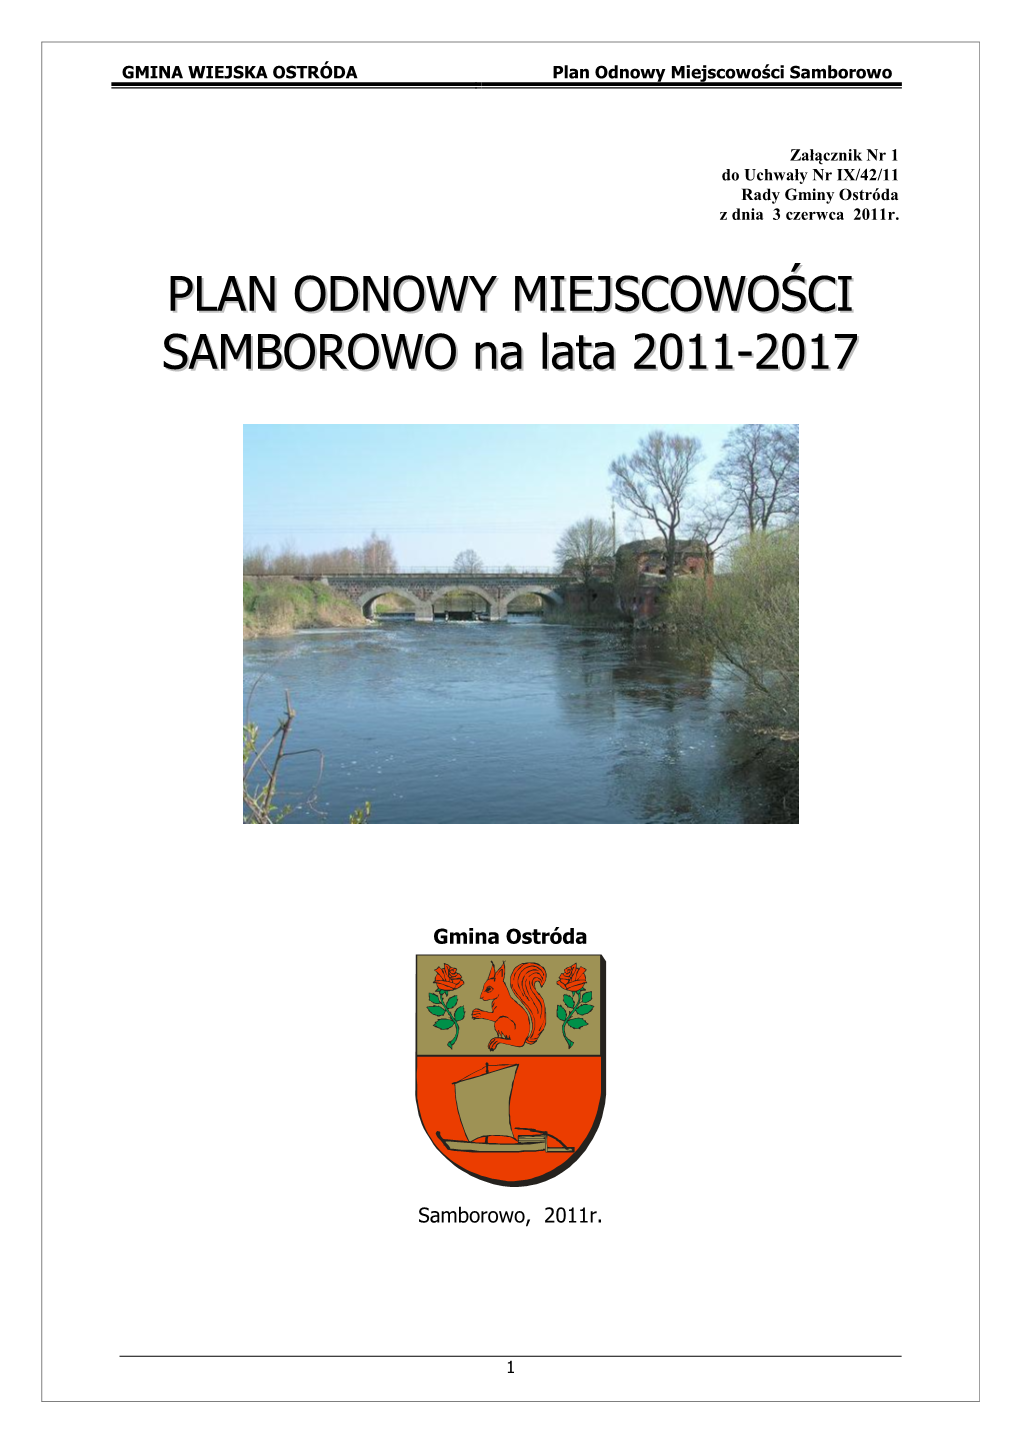 PLAN ODNOWY MIEJSCOWOŚCI SAMBOROWO Na Lata 2011-2017